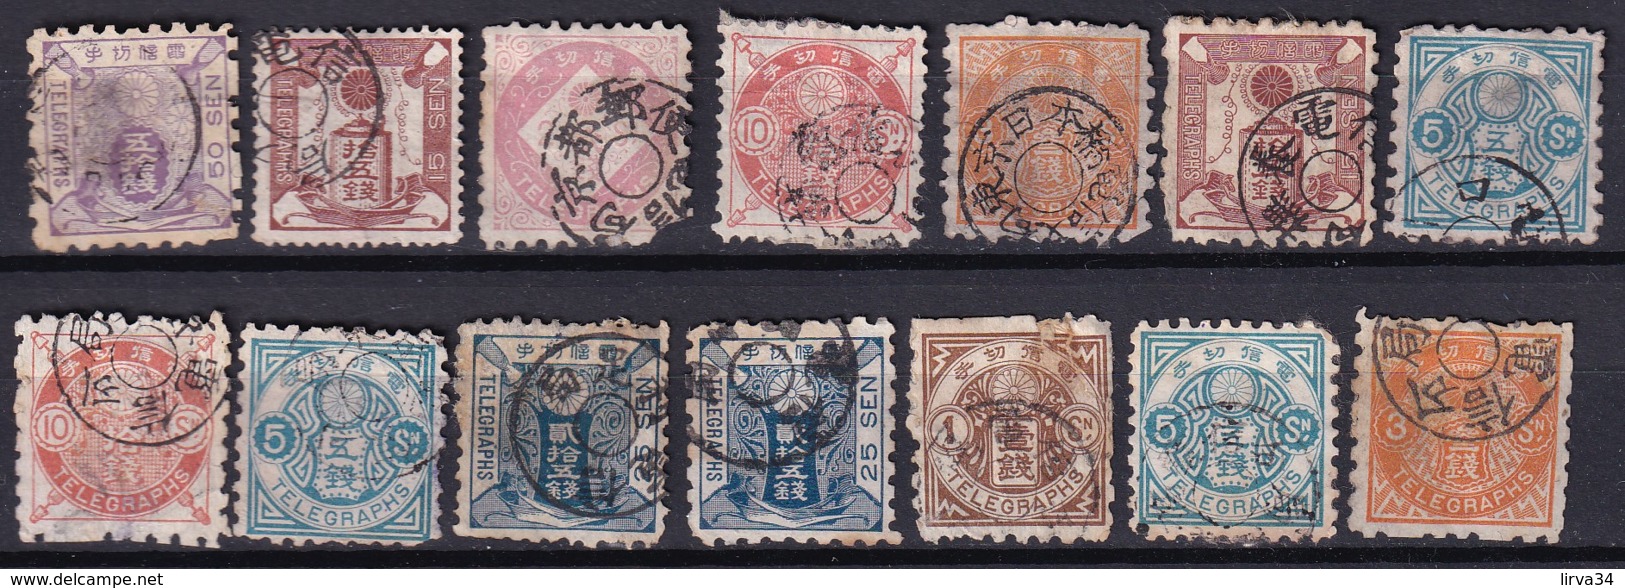 NIPON- JAPAN- LOT 14 TIMBRES  TÉLÉGRAPHES  DU JAPON OBLITÉRÉS AVEC OU SANS TRACES DE CHARNIERE-  NUANCES - Telegraph Stamps